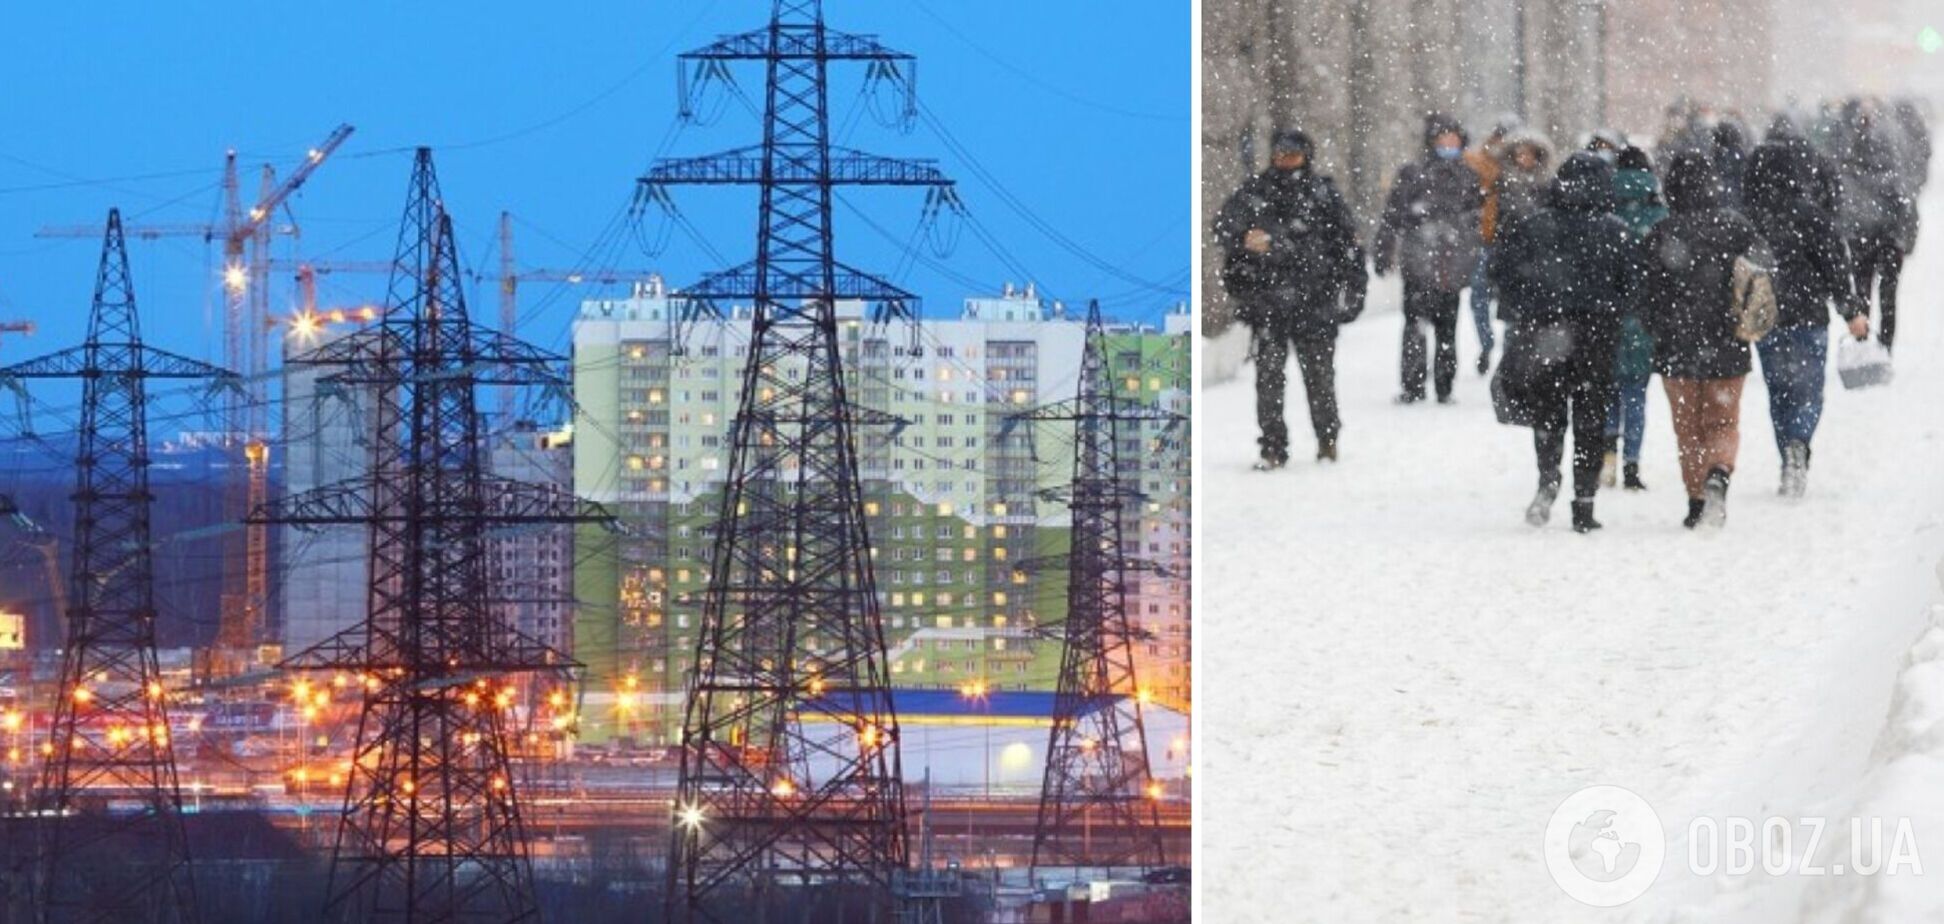 Глава 'Укрэнерго' выступил за изменение регуляторного поля в энергетике для свободного импорта электричества